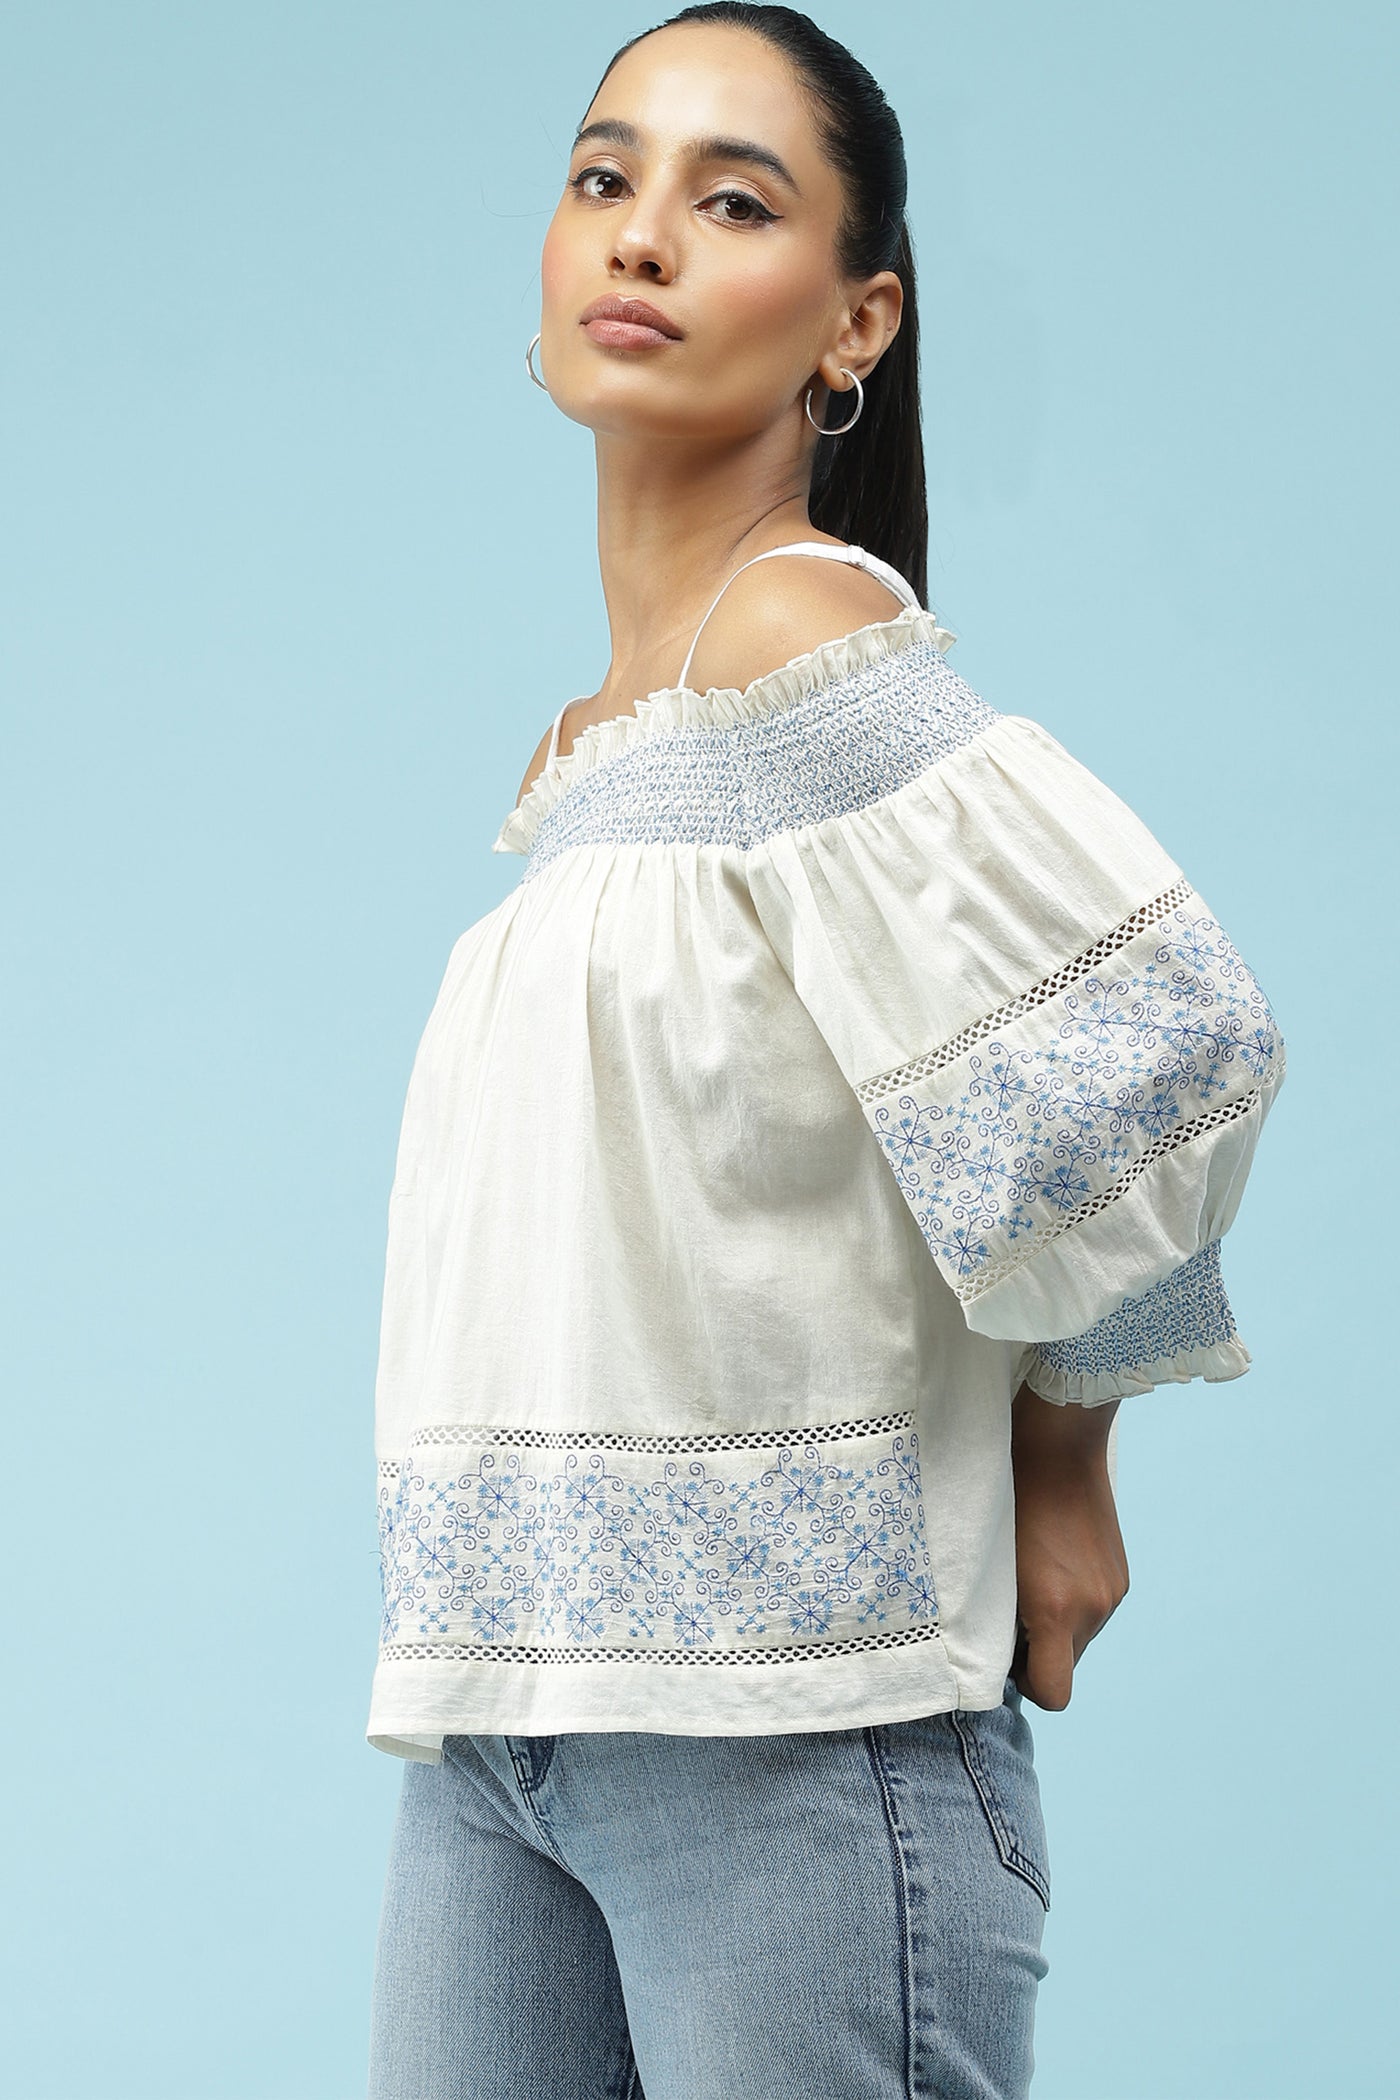 label ritu kumar Ecru Smocked Off Shoulder Embroidered Top western  designer wear online shopping melange singapore